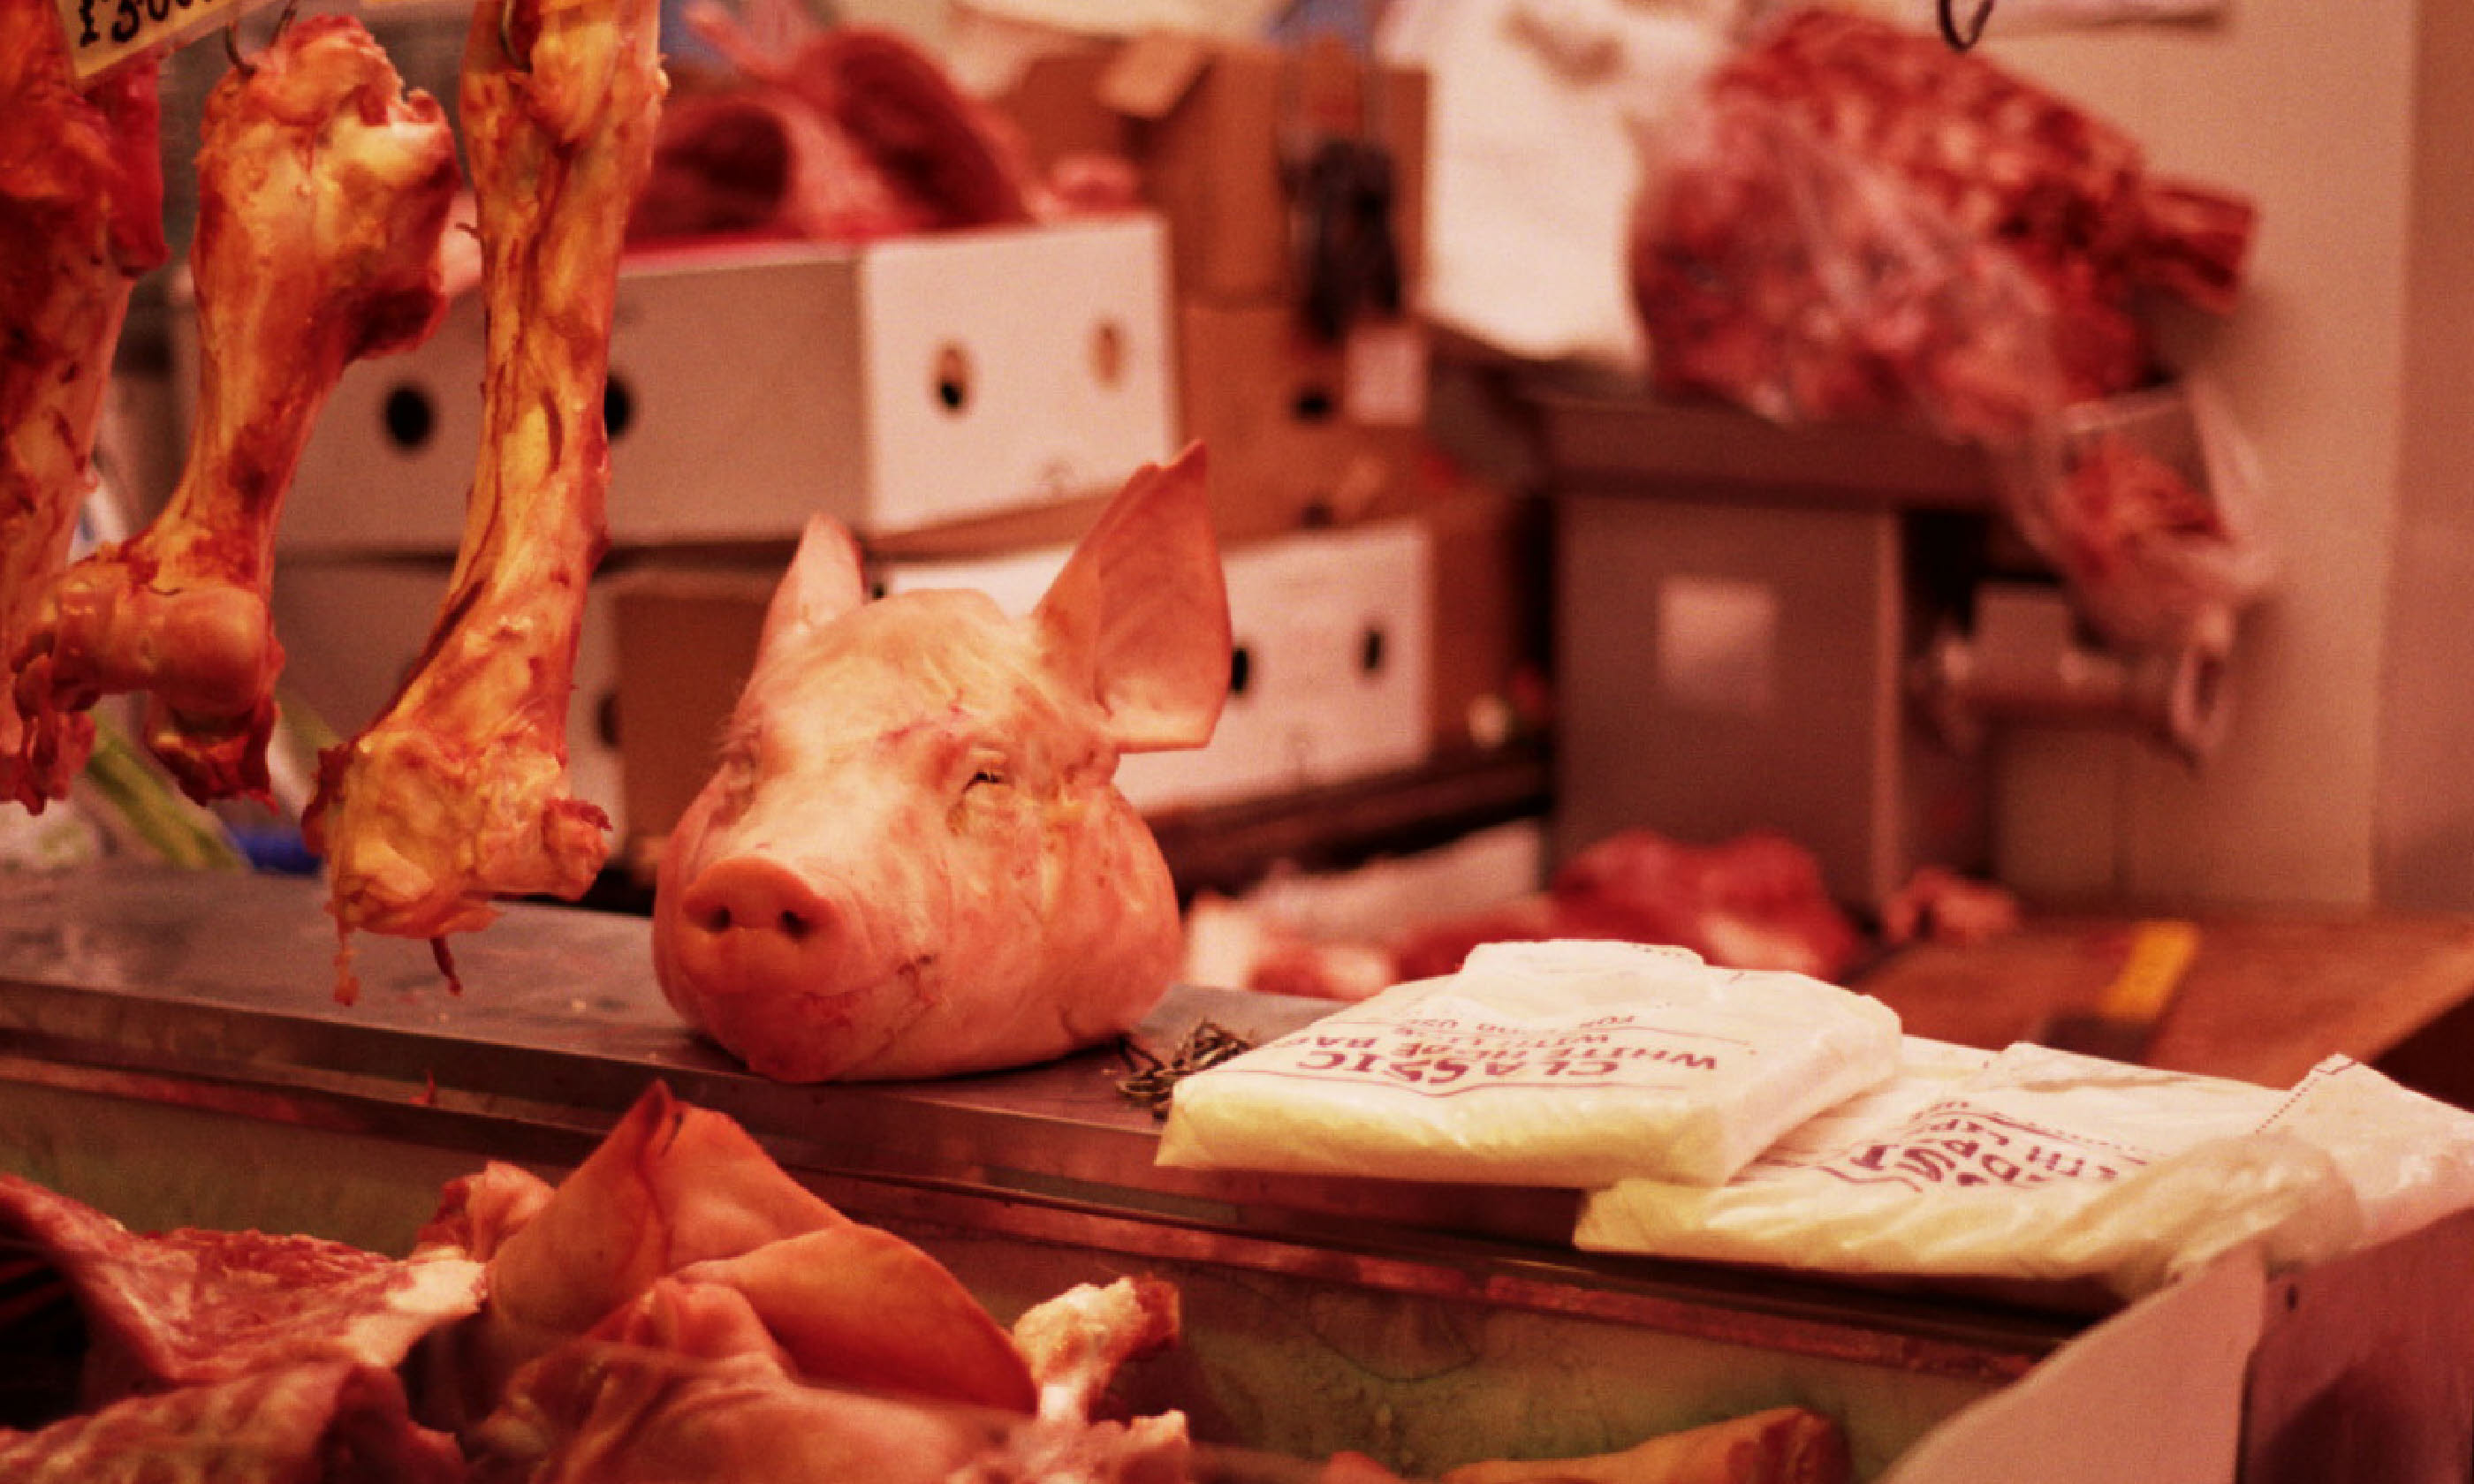 Pig's head in the butcher's (Flickr C/C: Walt Jabsco)